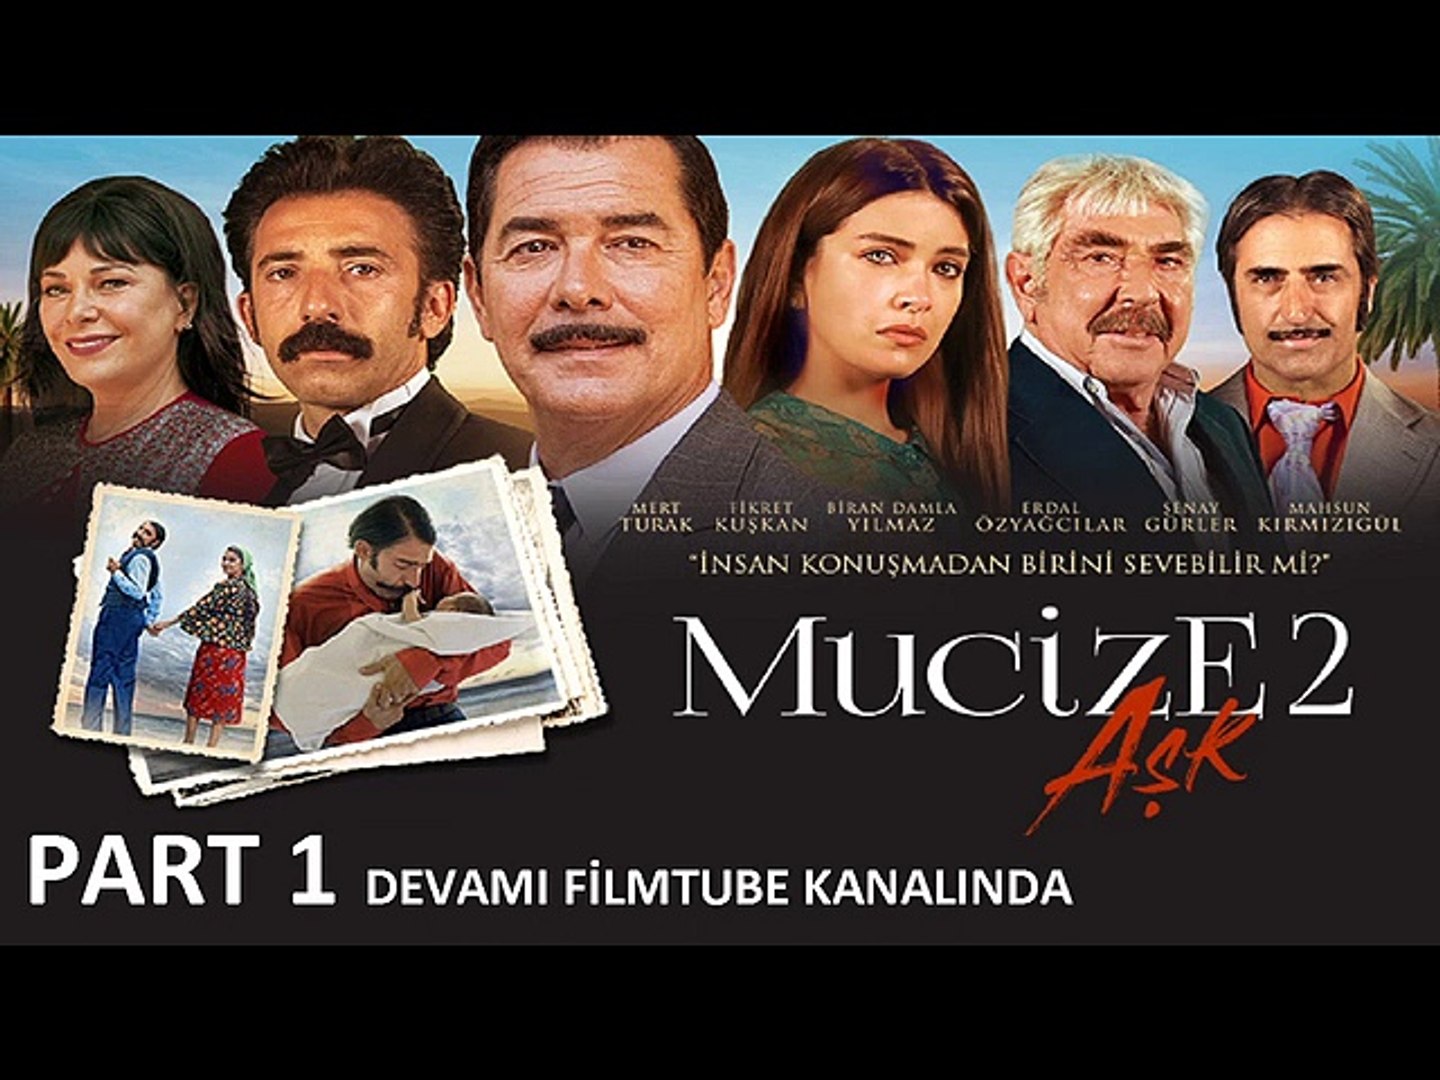 Mucize 2 Aşk Full İzle by FilmTube - Dailymotion